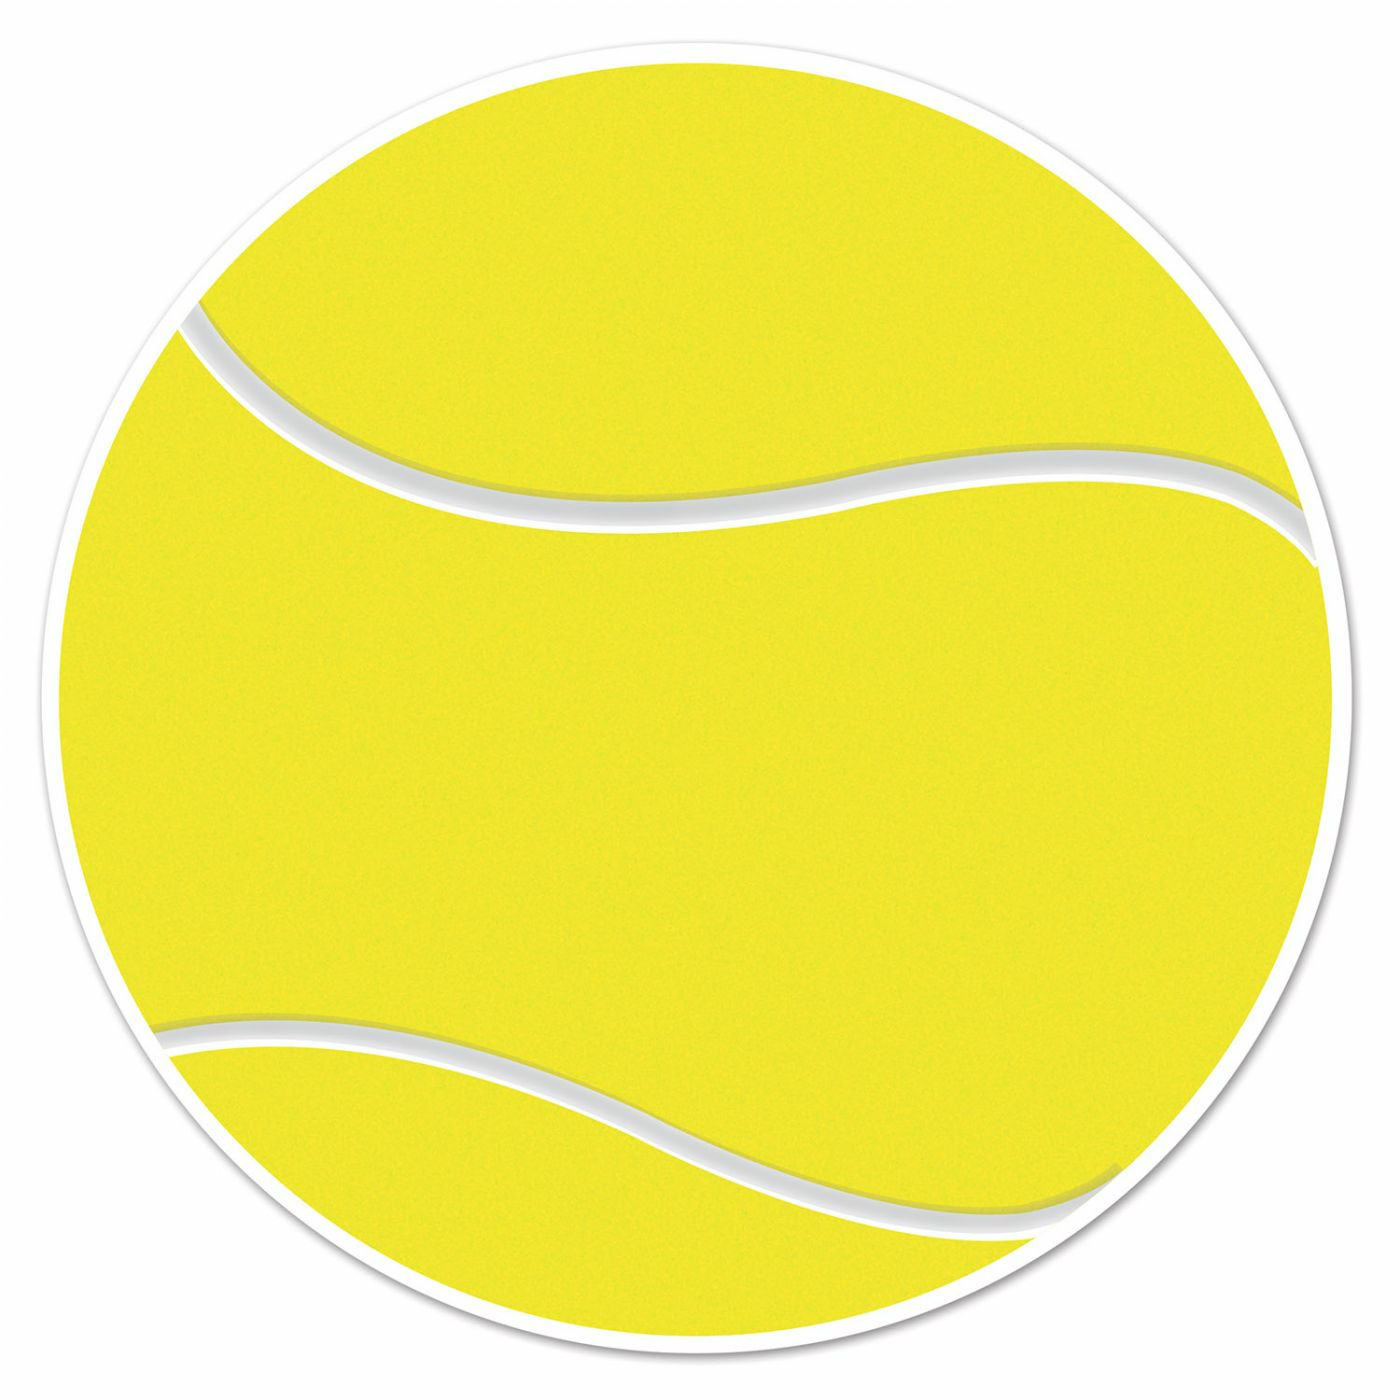 Afbeelding van Tennisbal sport decoratie sticker versiering - geel - dia 13 cm - vinyl